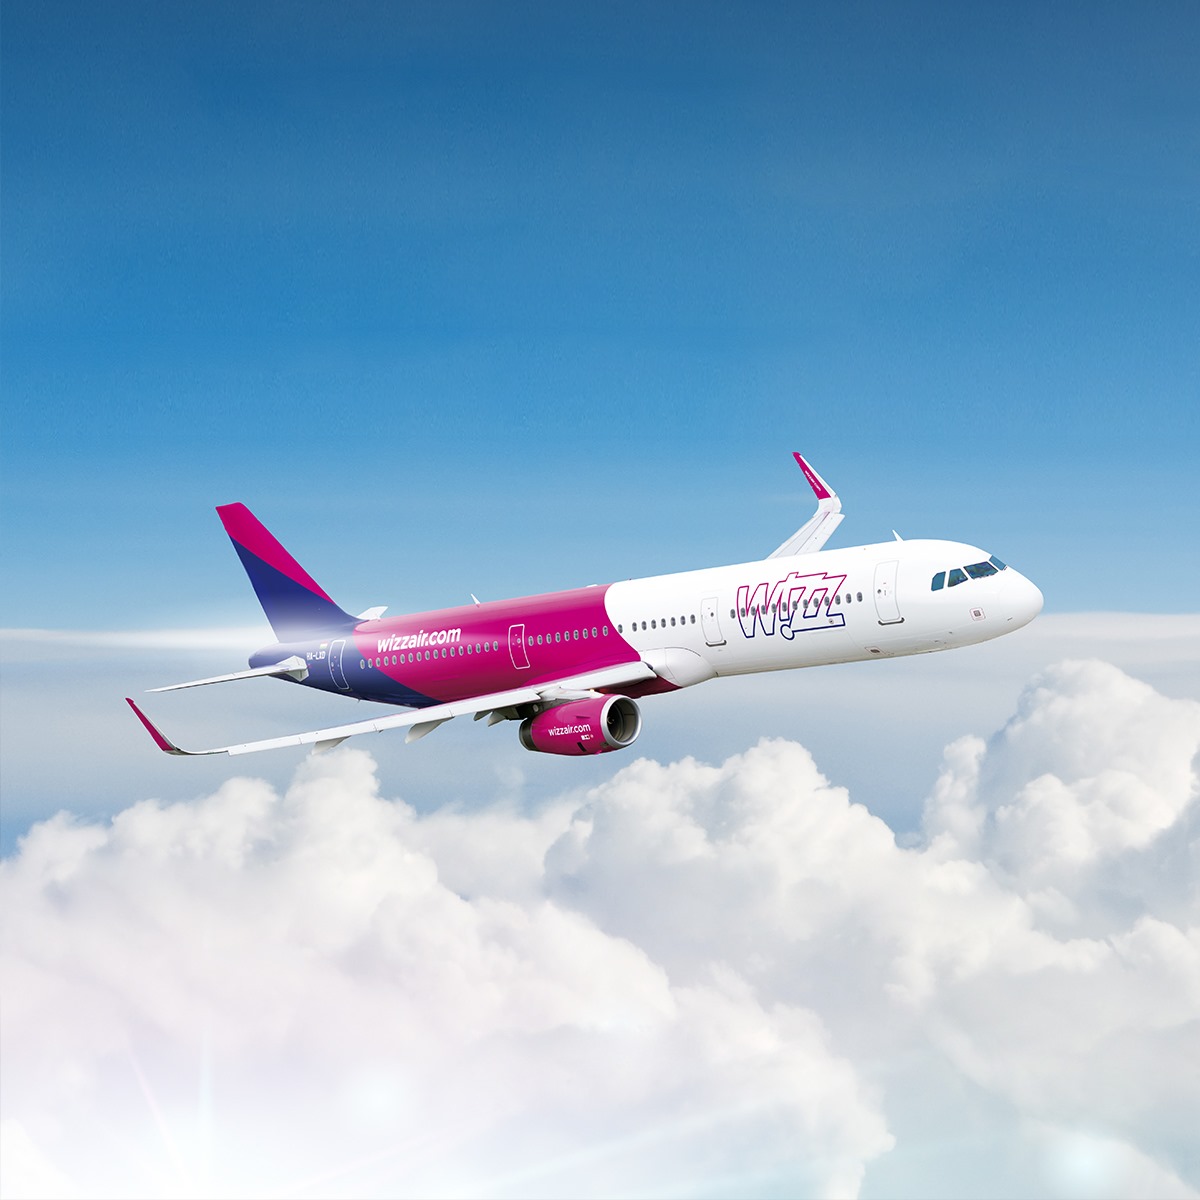 Wizz air-თან ქუთაისის აეროპორტში დარჩენილი 87 მგზავრისთვის ბილეთების გადაცვლაზე შევთანხმდით - ირაკლი ქარქაშაძე